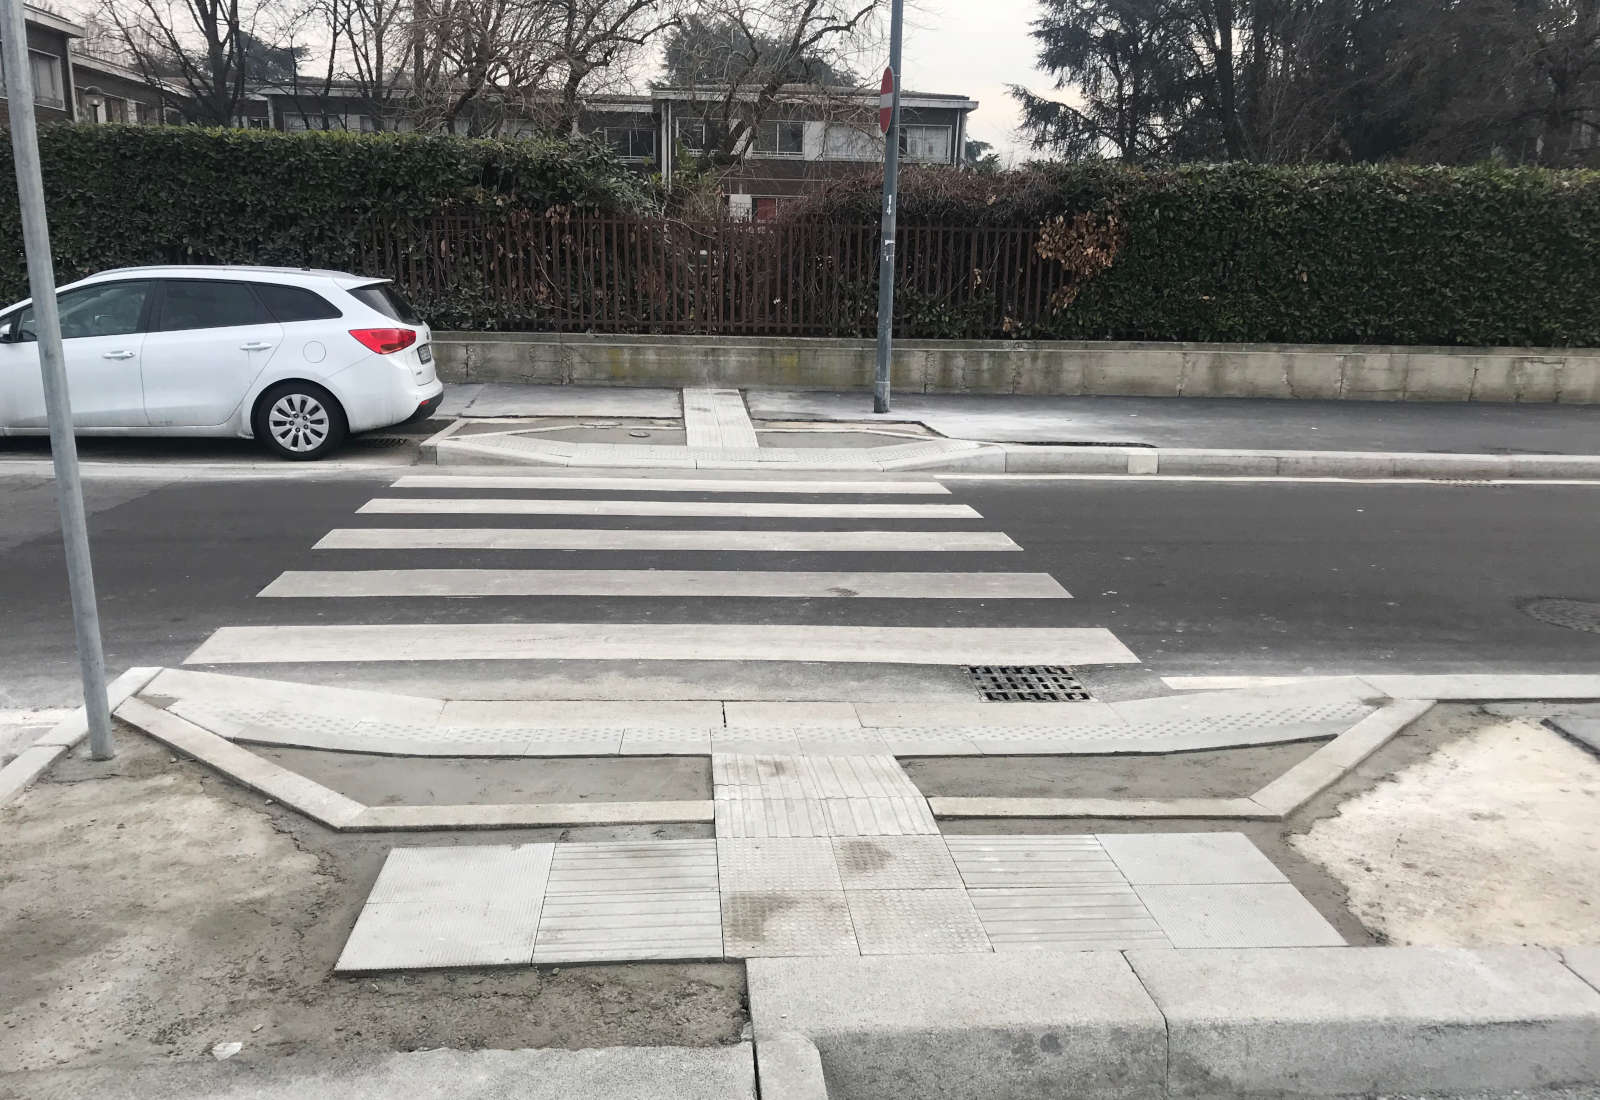 Riqualificazione di Via Rodano-Predil a Milano - Il cantiere